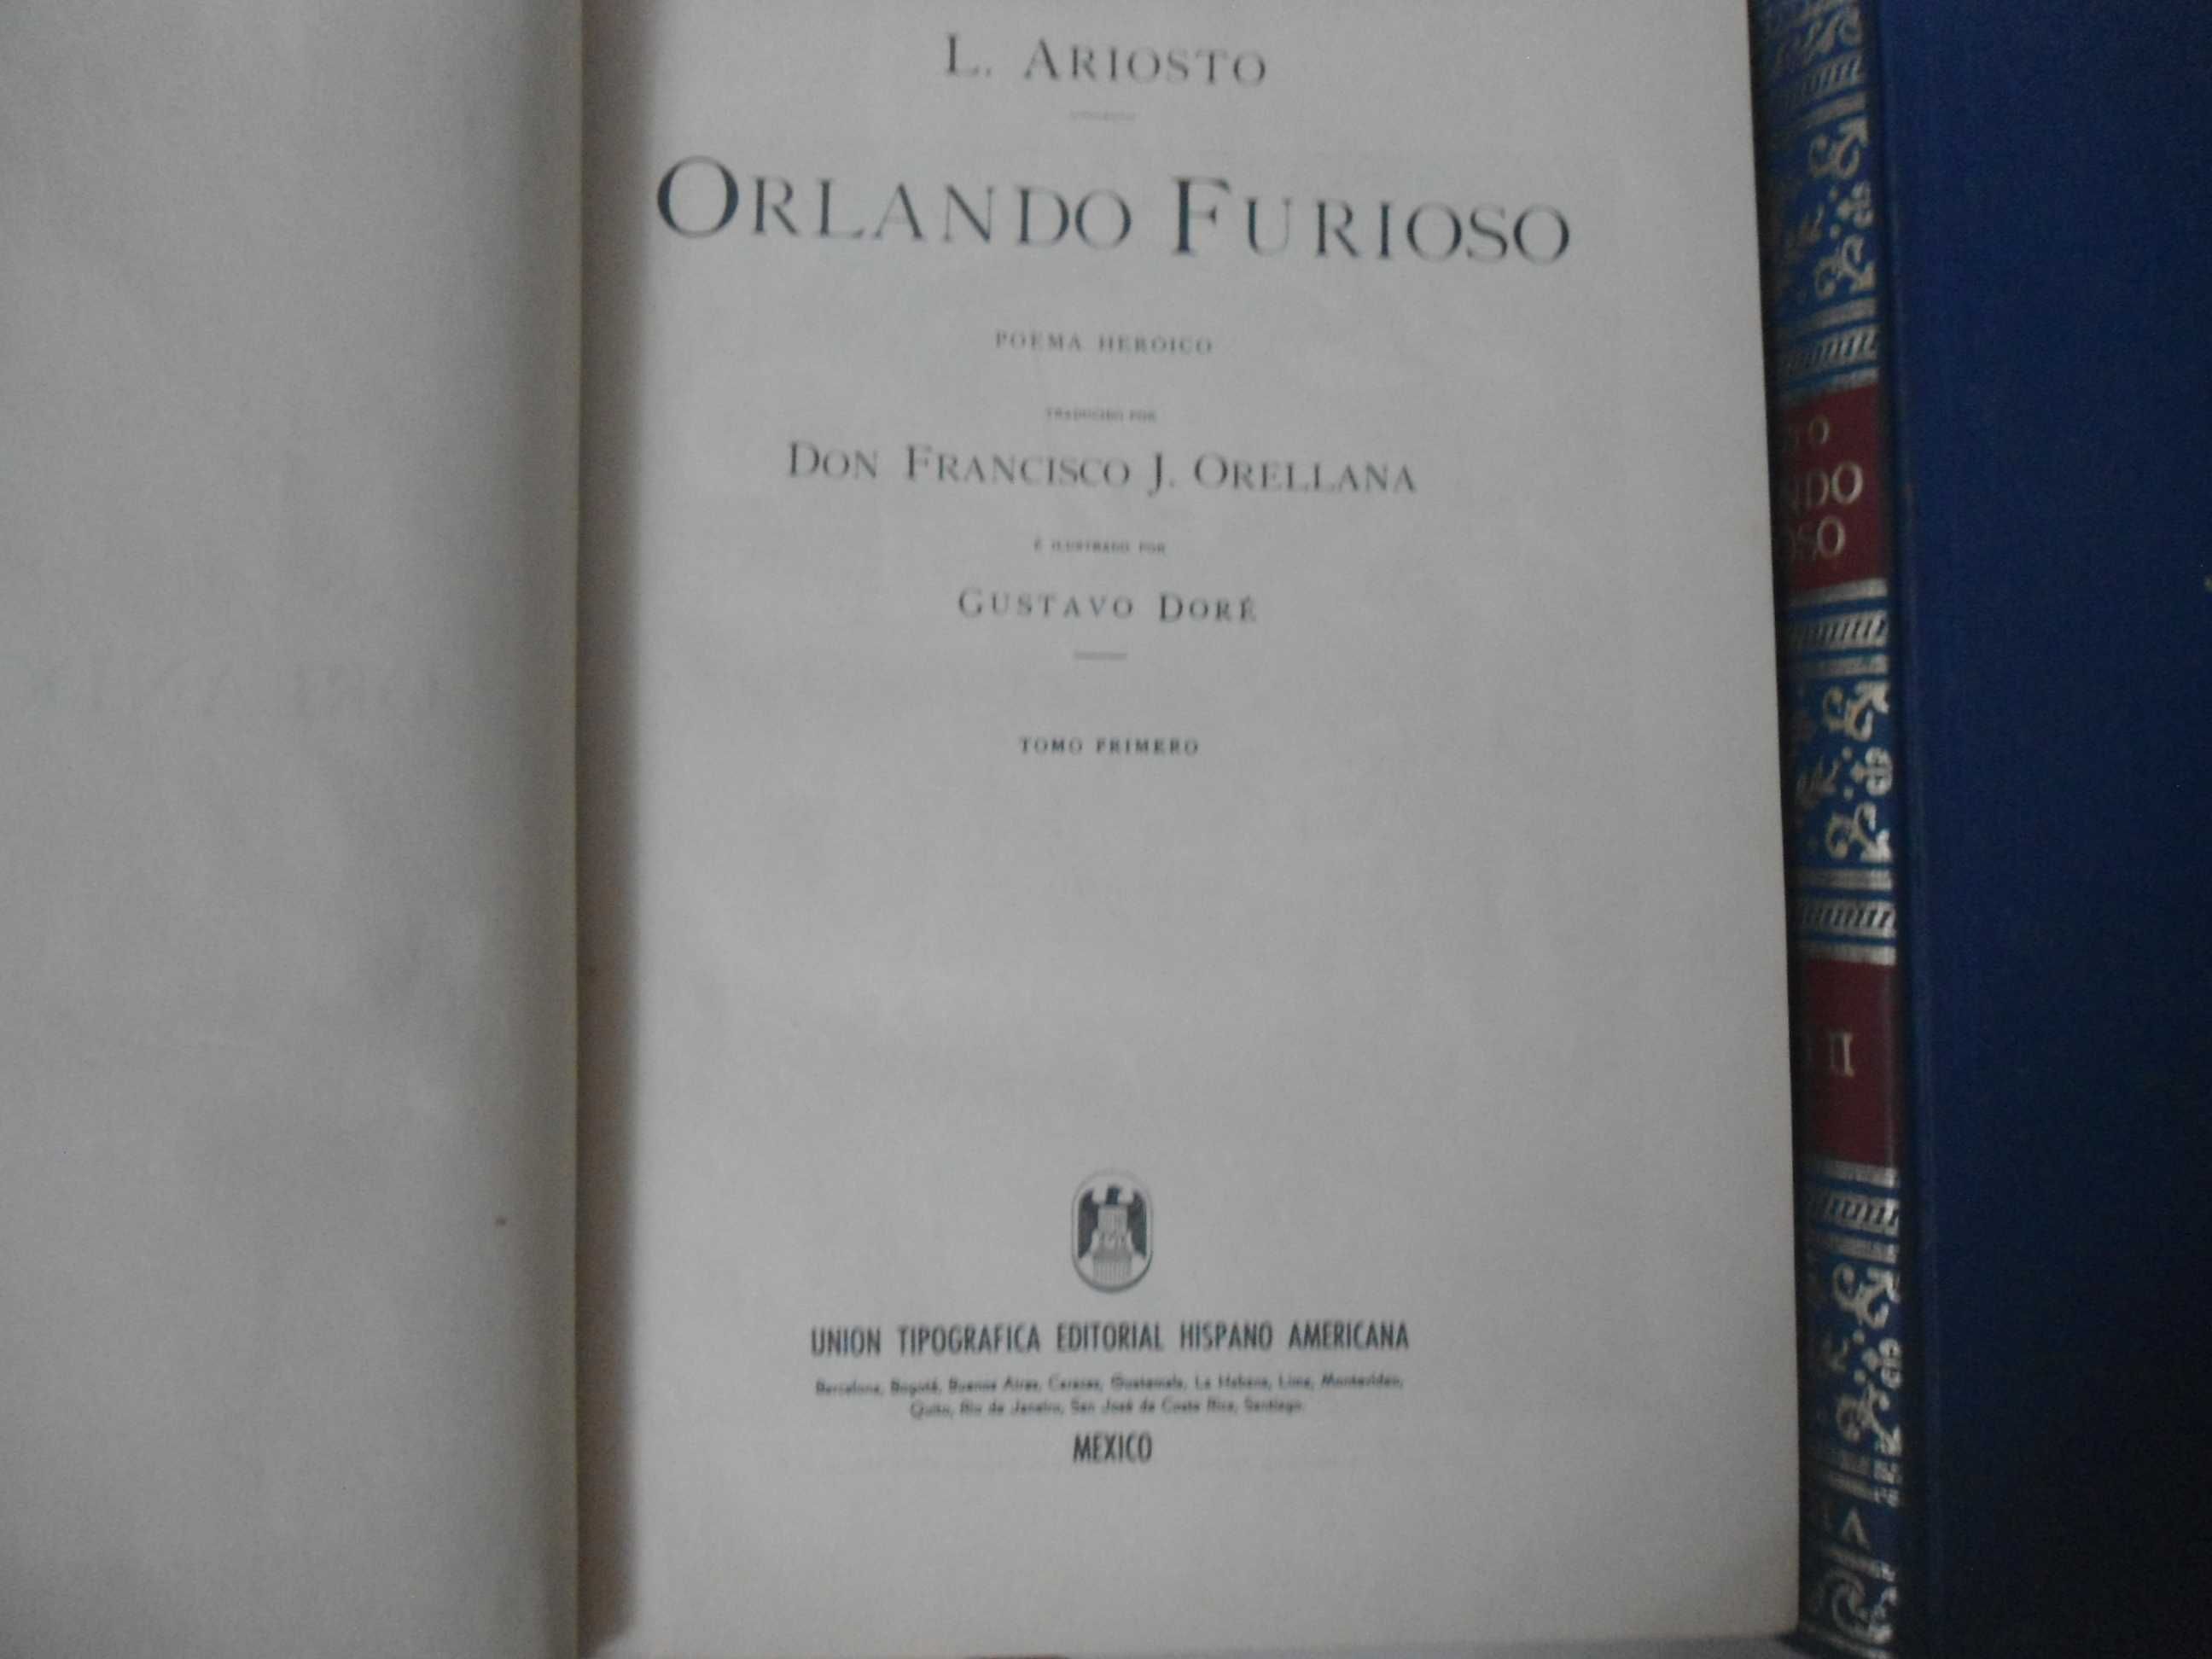 Orlando Furioso por L. Ariosto